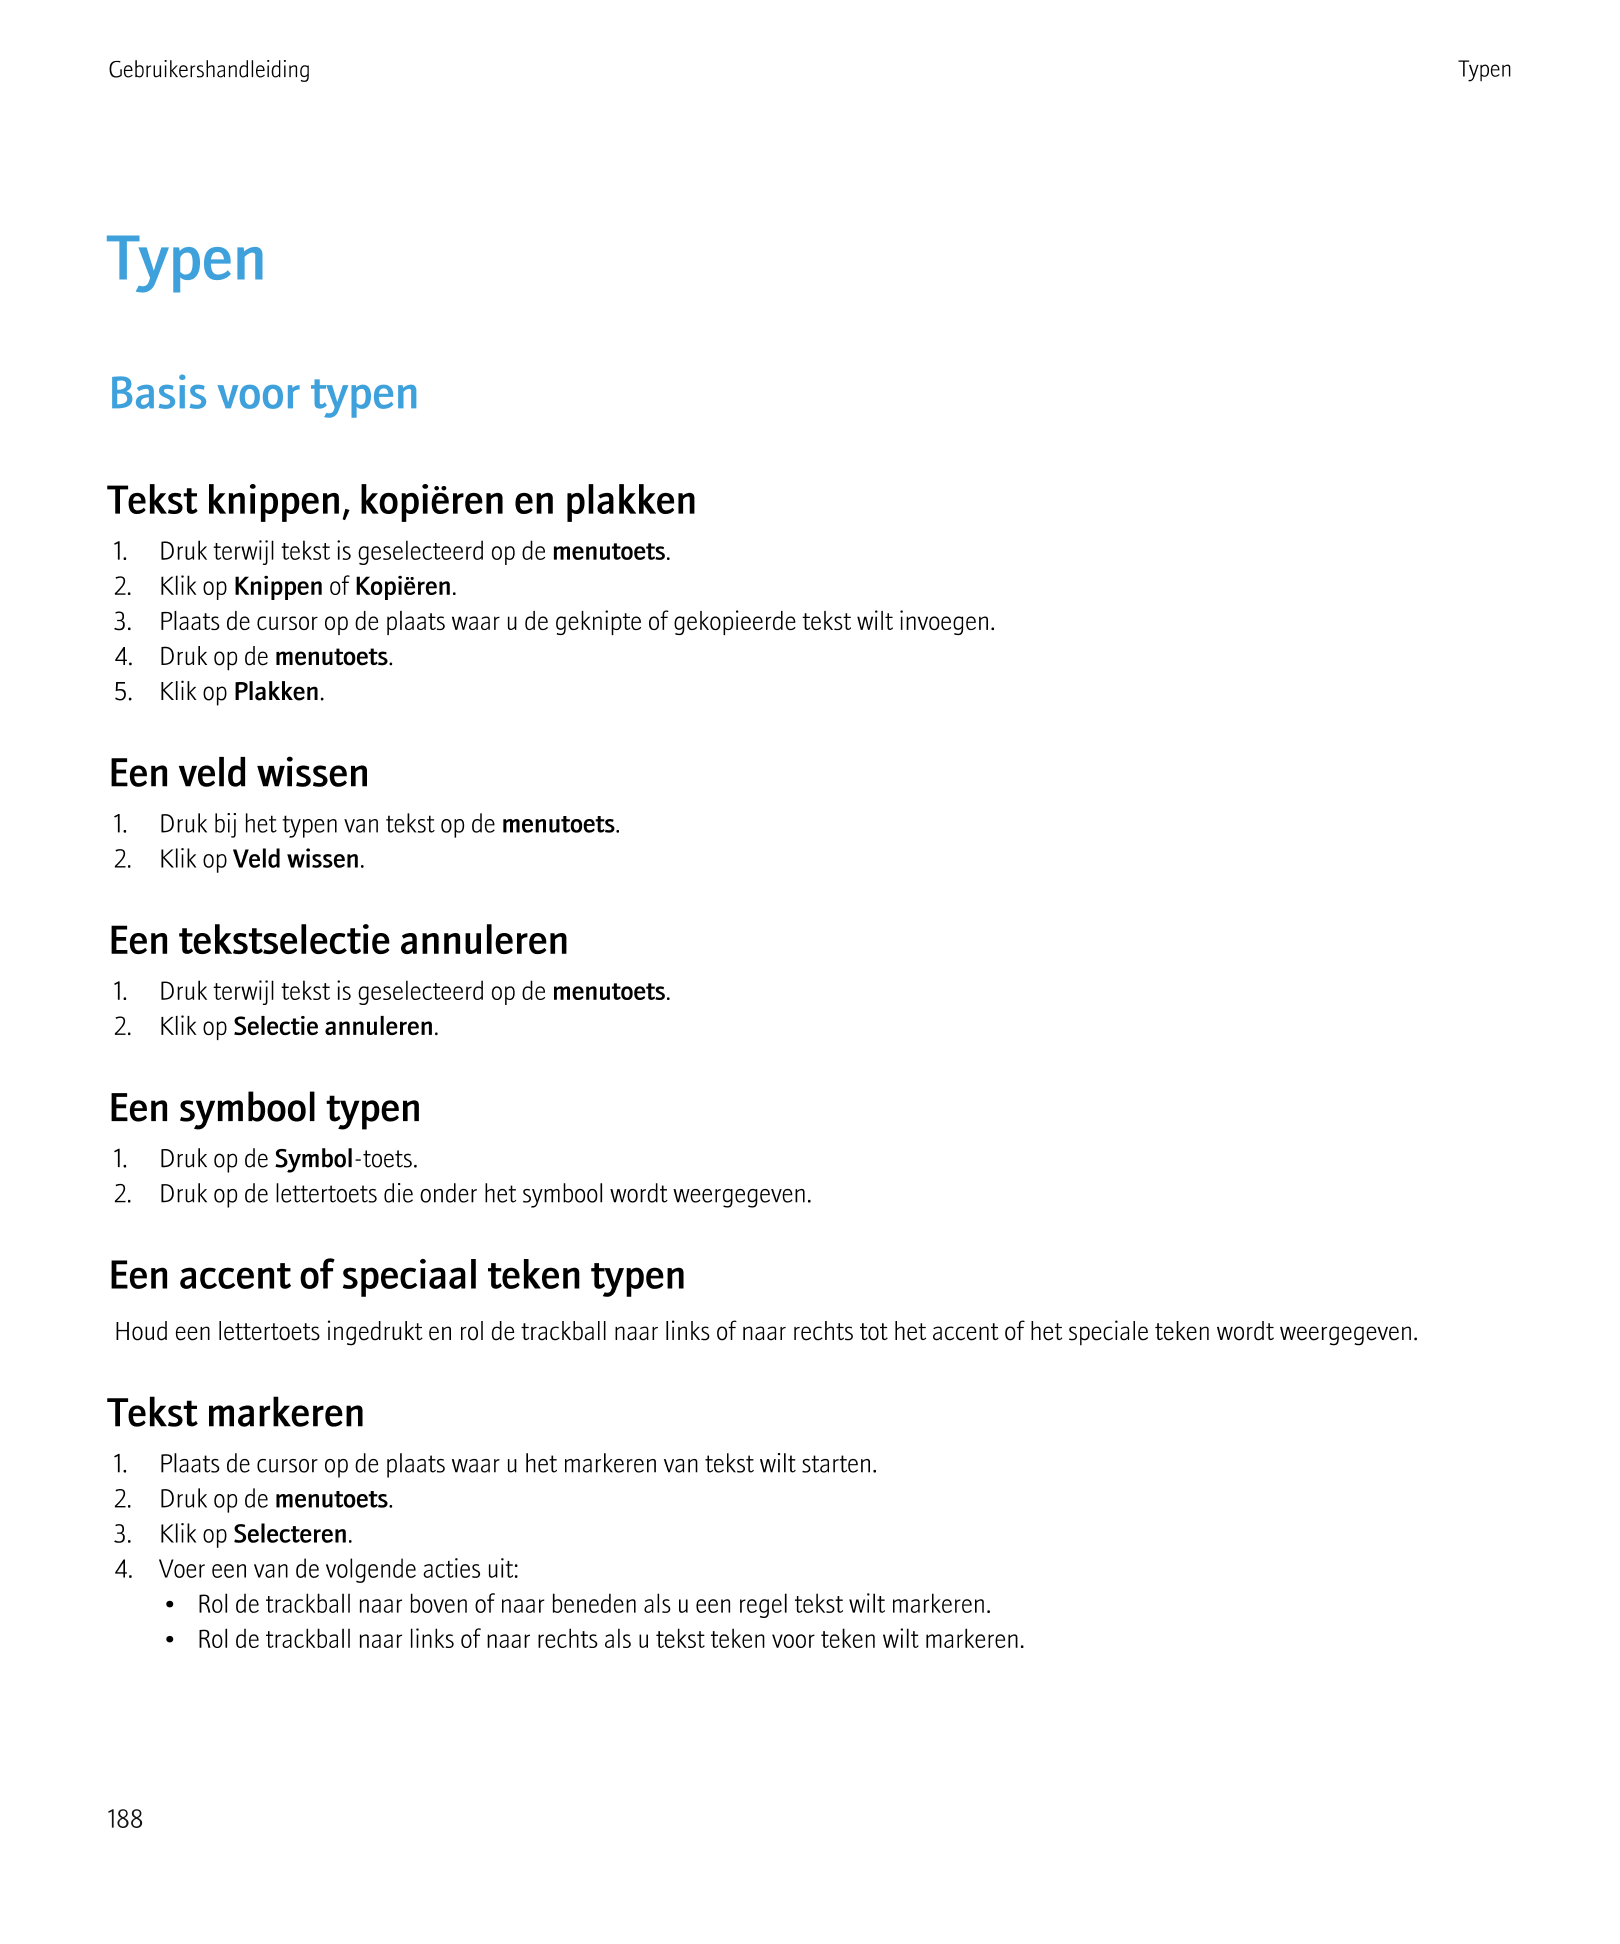 Gebruikershandleiding Typen
Typen
Basis voor typen
Tekst knippen, kopiëren en plakken
1.     Druk terwijl tekst is geselecteerd 